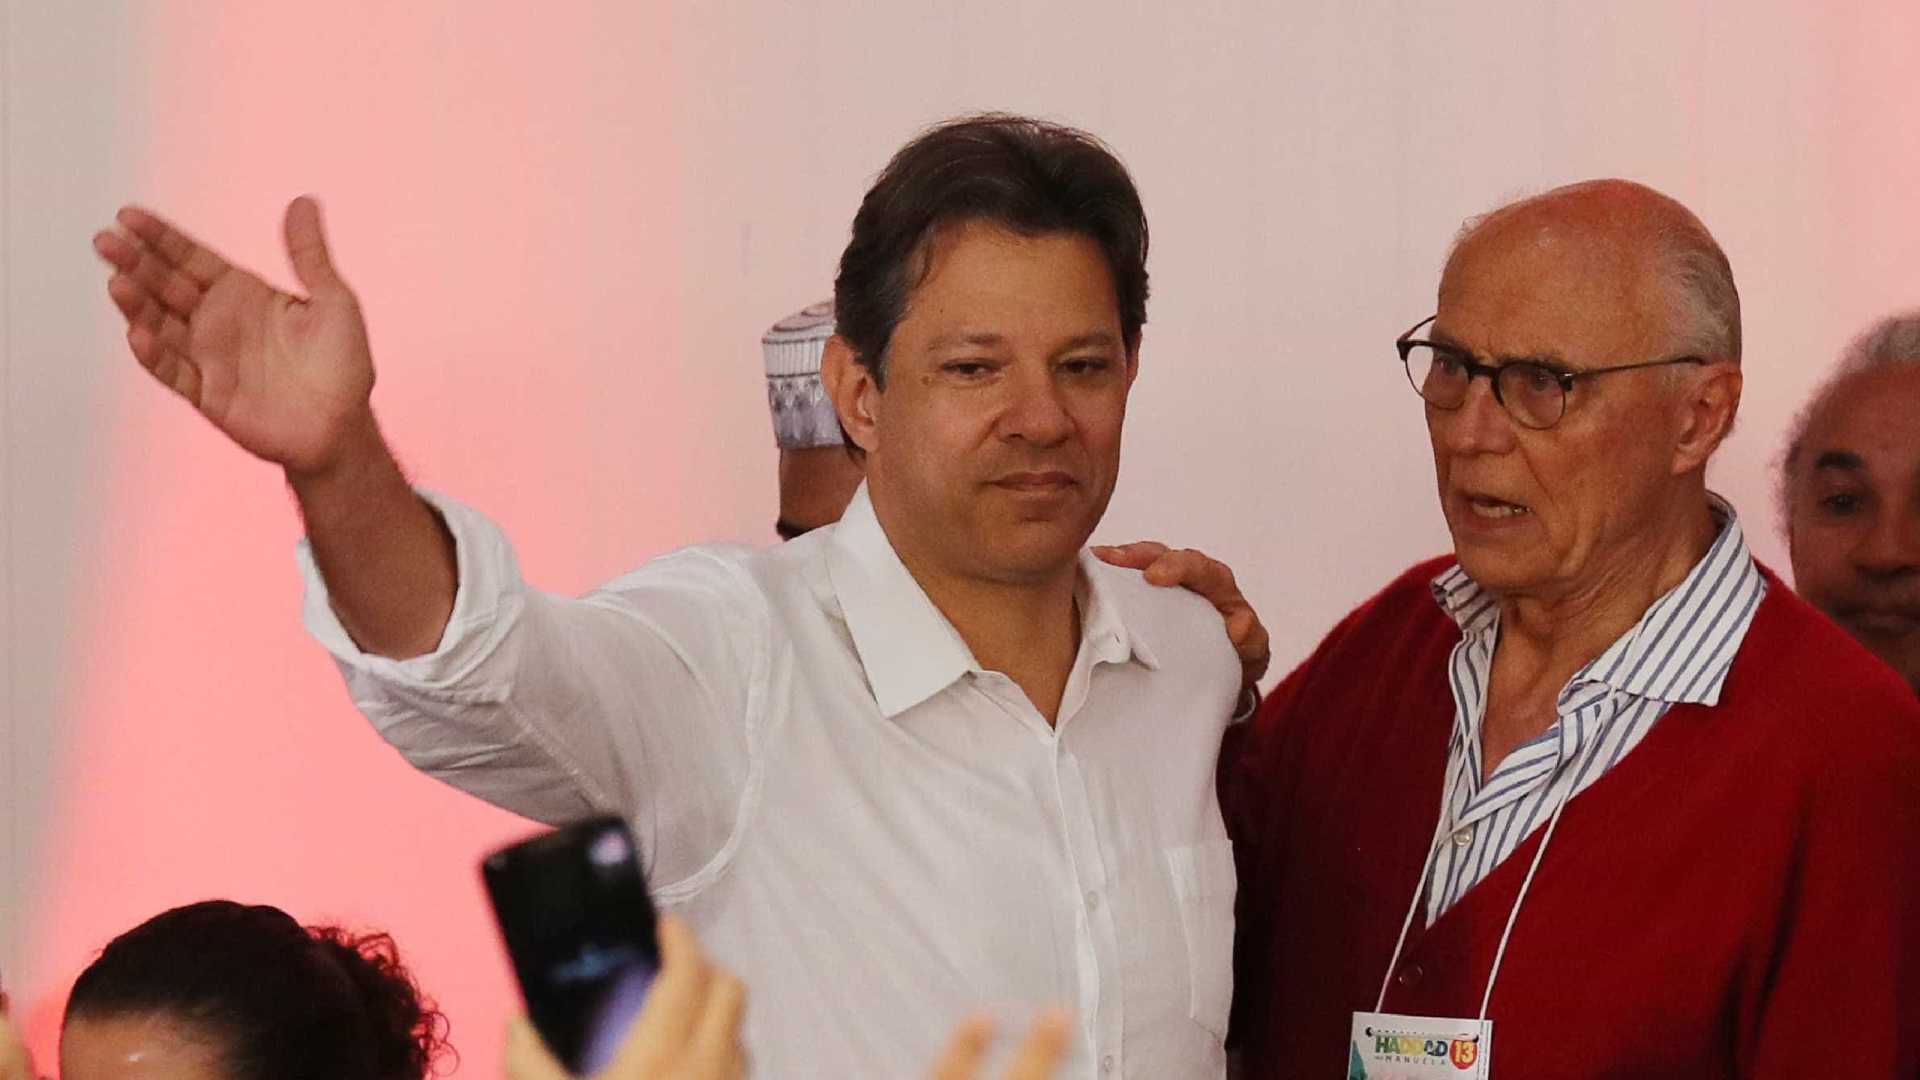 Haddad tem aval de Lula para liderar oposição ao governo Bolsonaro